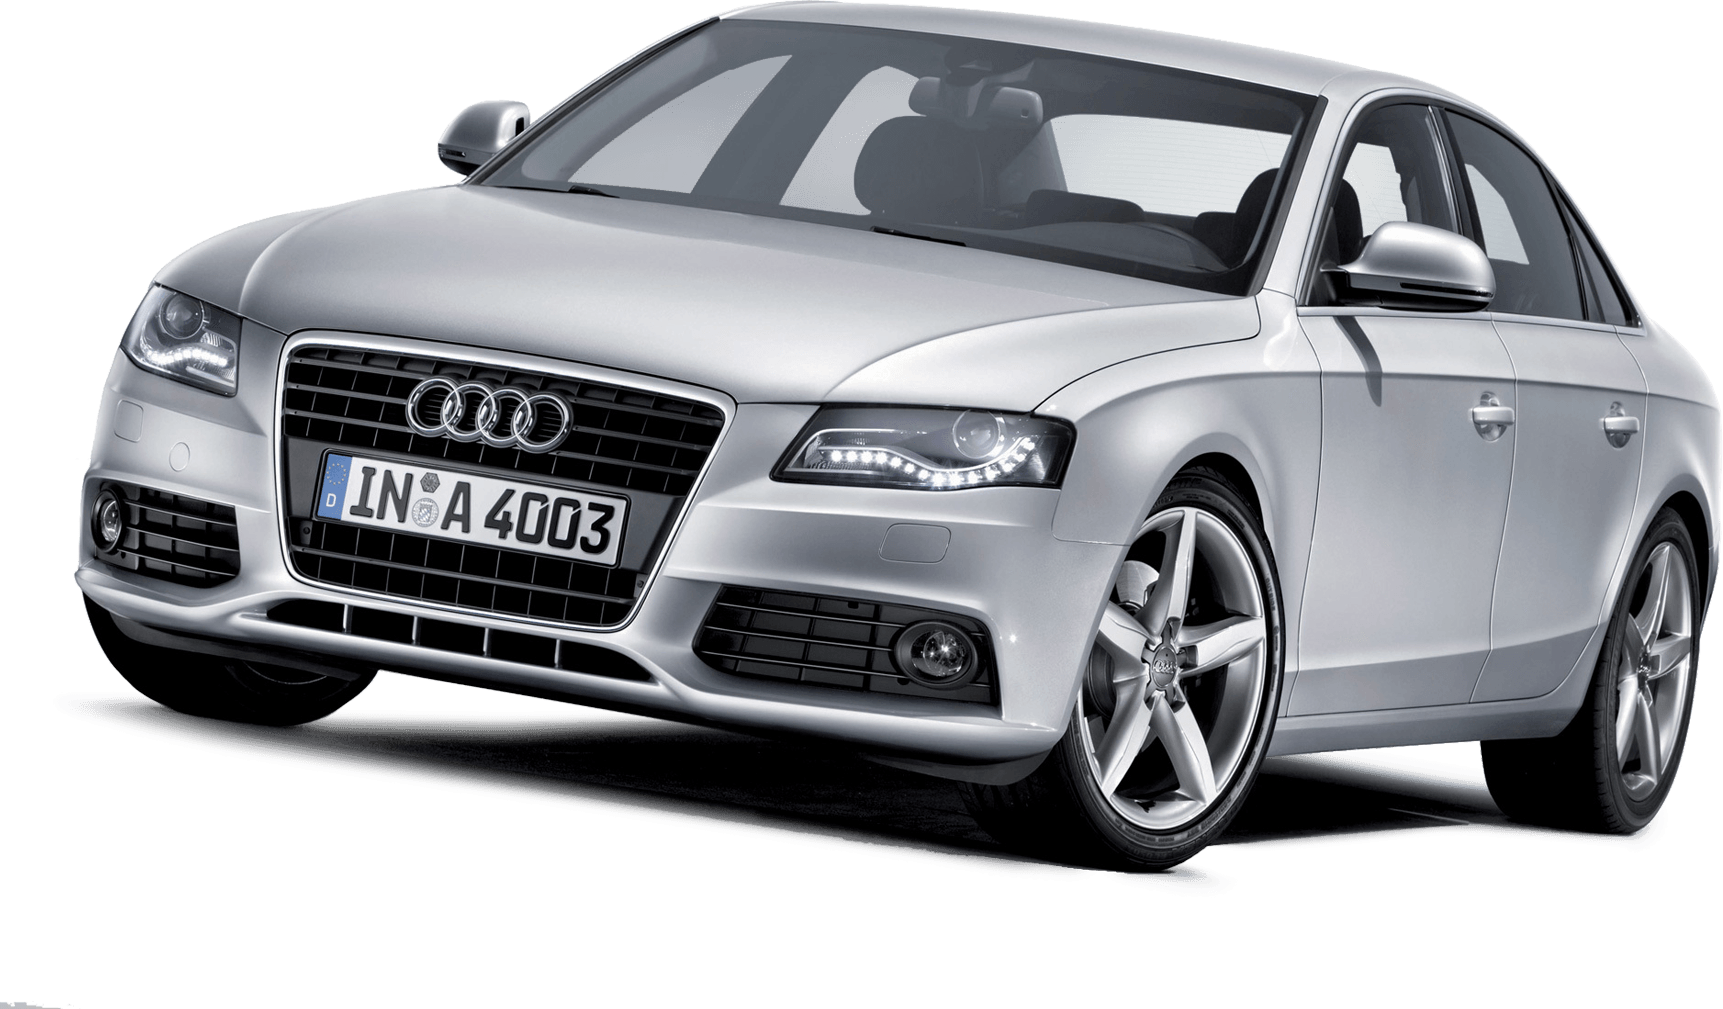 Download Audi Png Car Image Hq Png Image Freepngimg